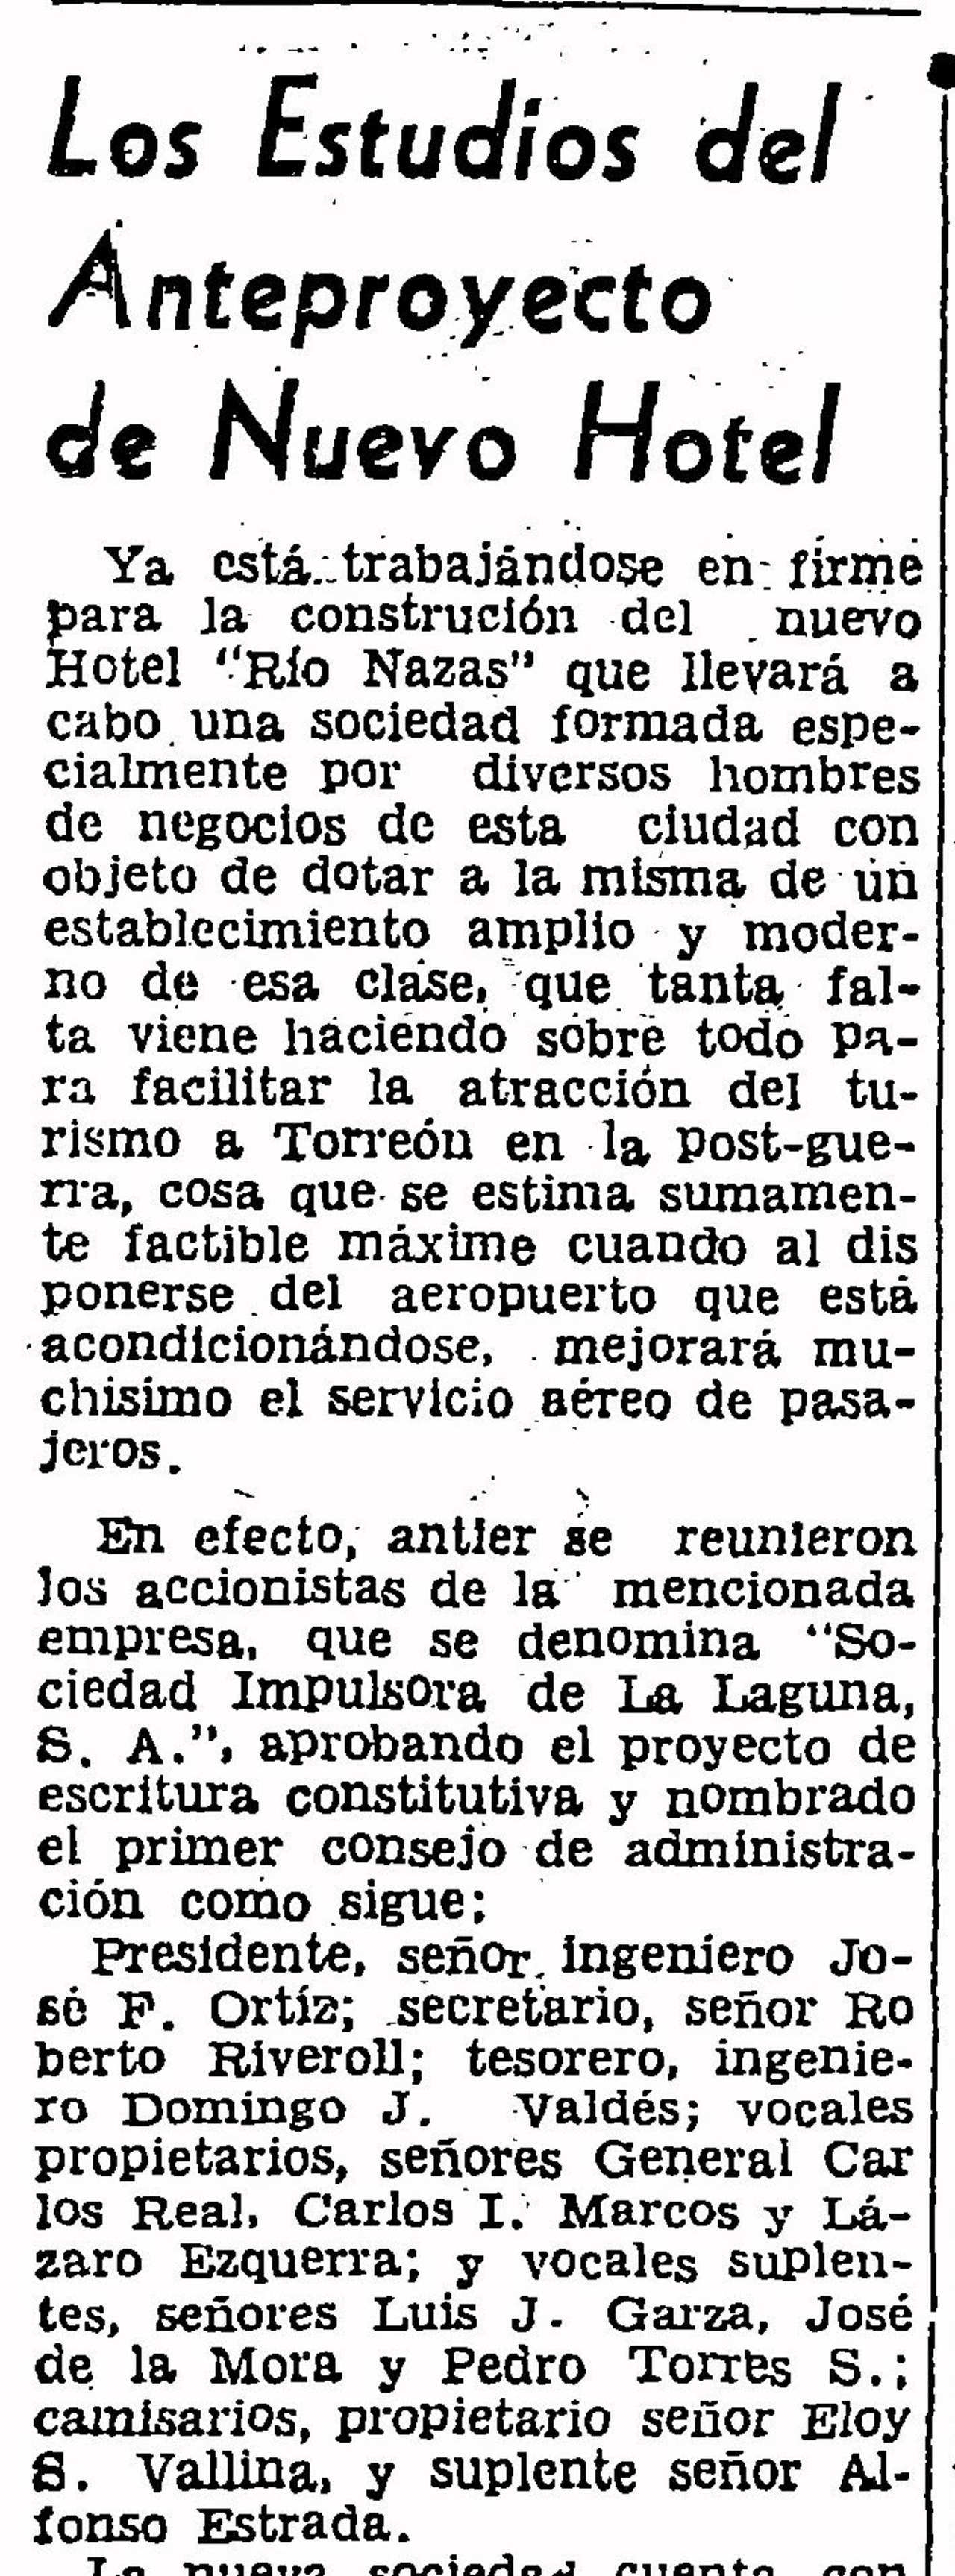 EST, Noticia sobre el nuevo hotel, 22 de
abril de 1945, p. 7